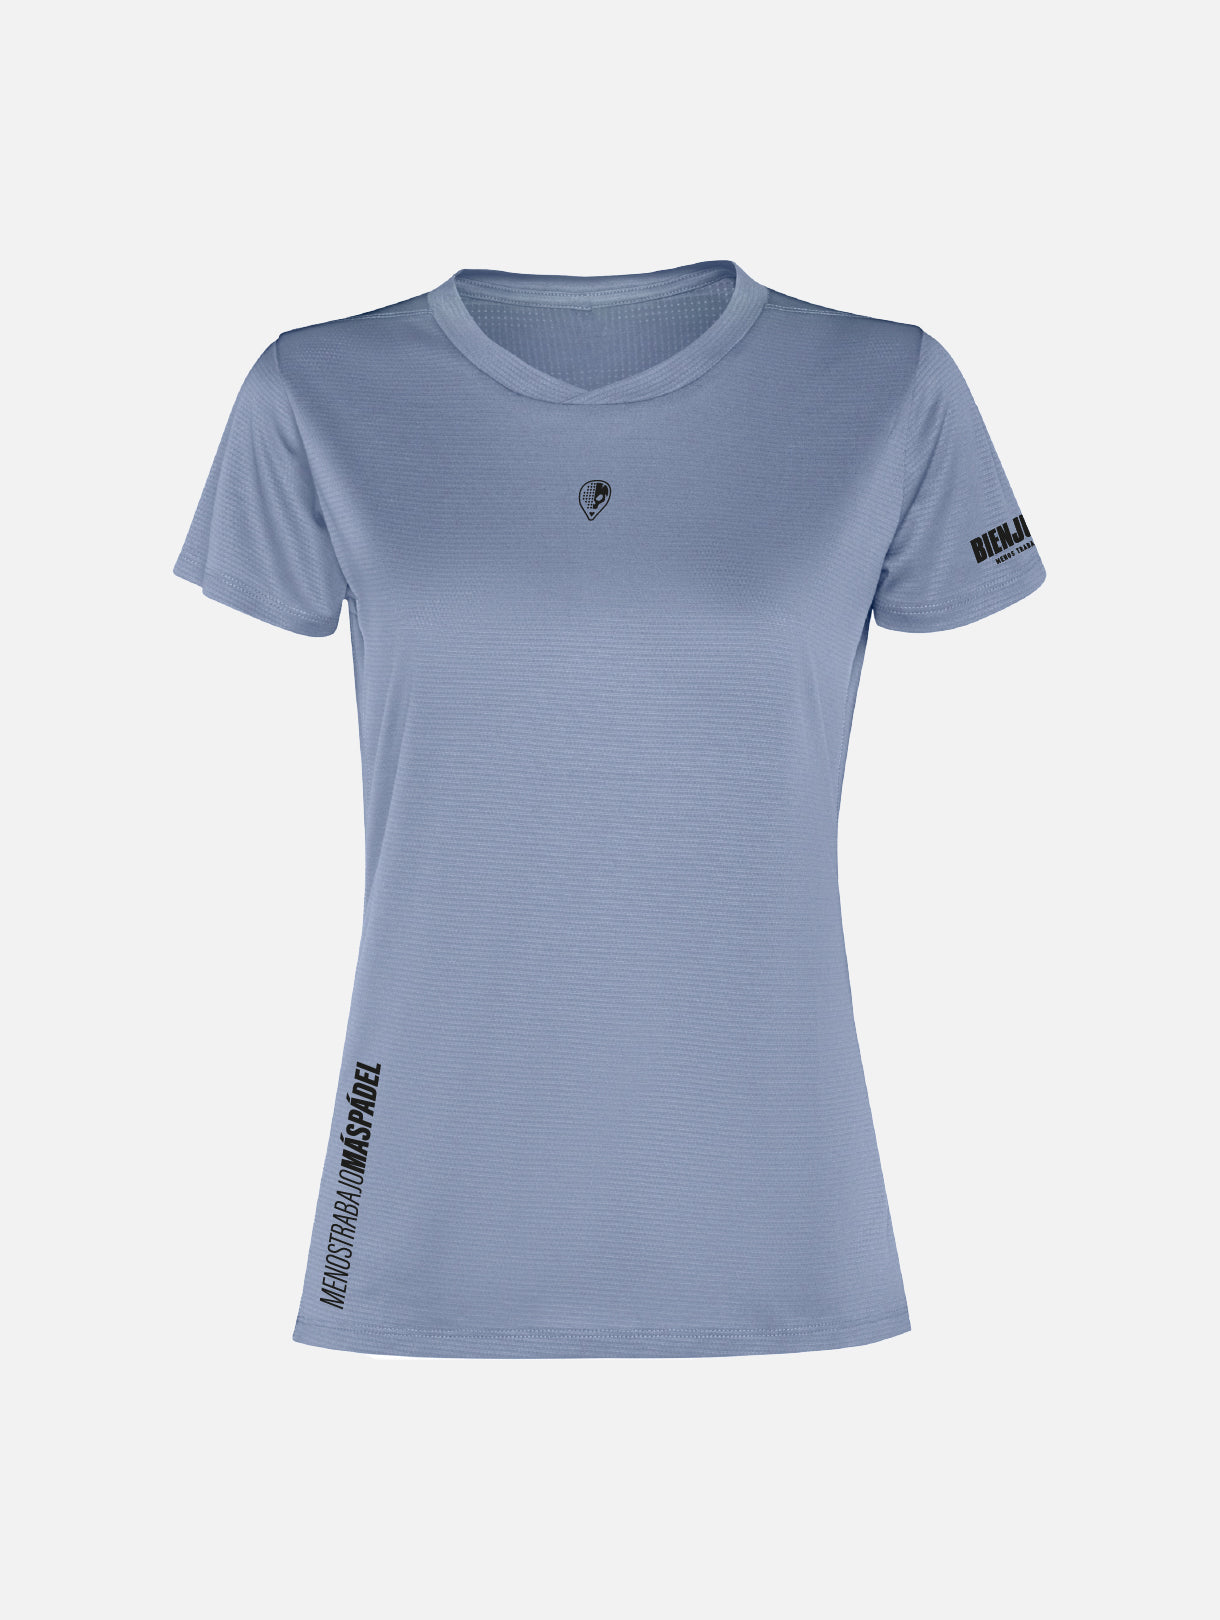 Breezy Paula T-shirt - Zen Blue